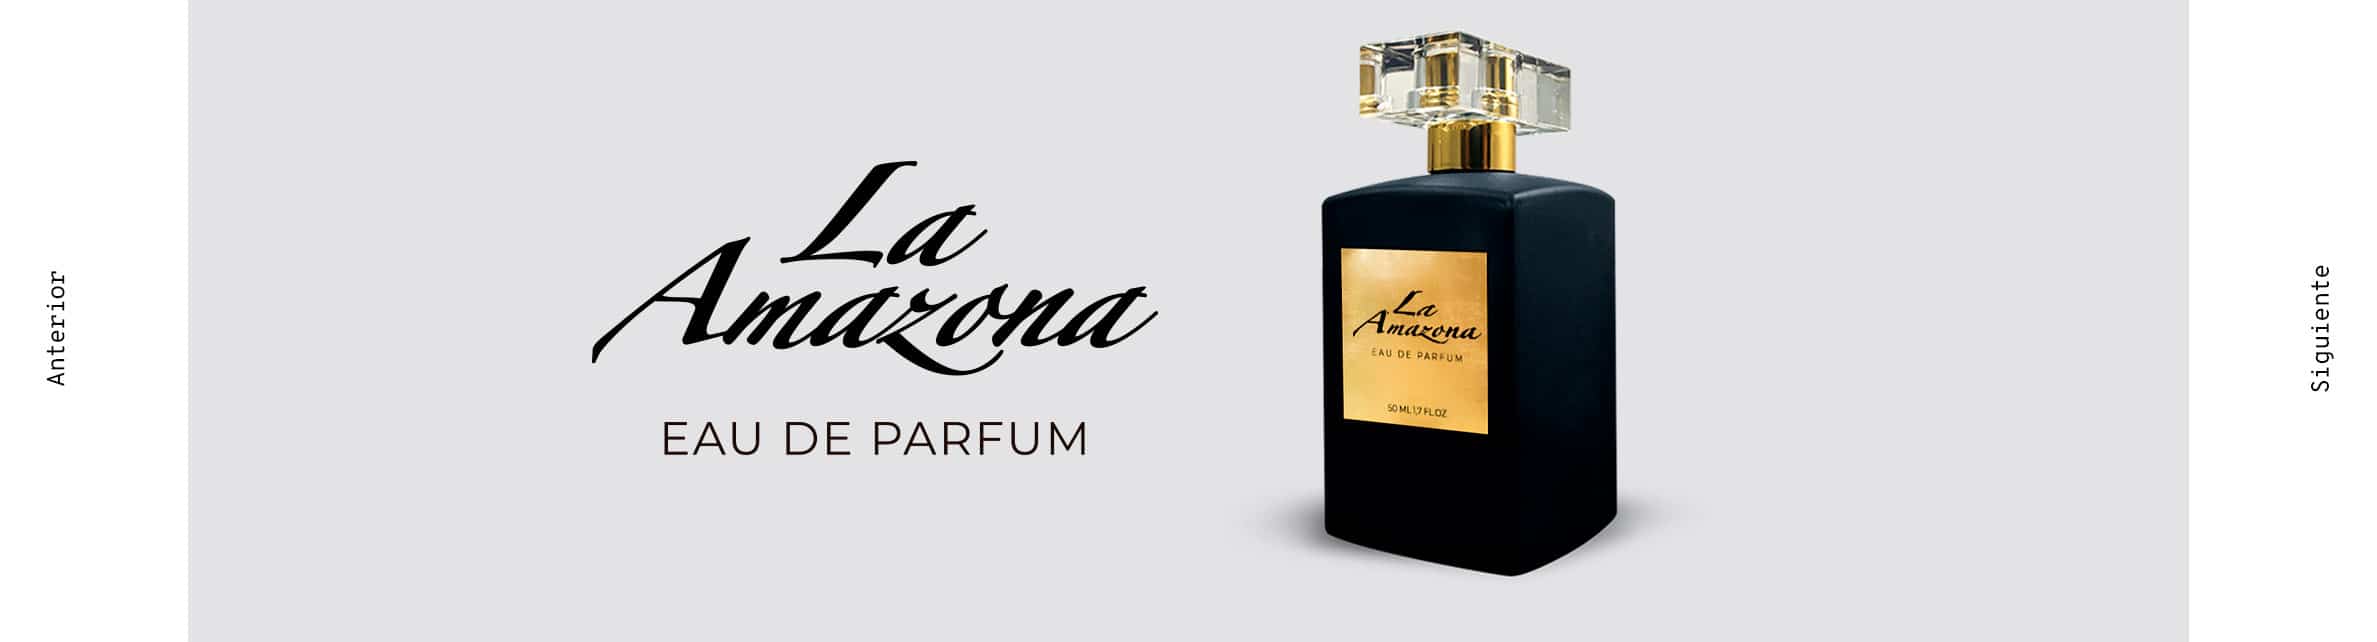 Proyecto La Amazona - Esenssi Aromas: Fabrica de Perfumes de Equivalencia